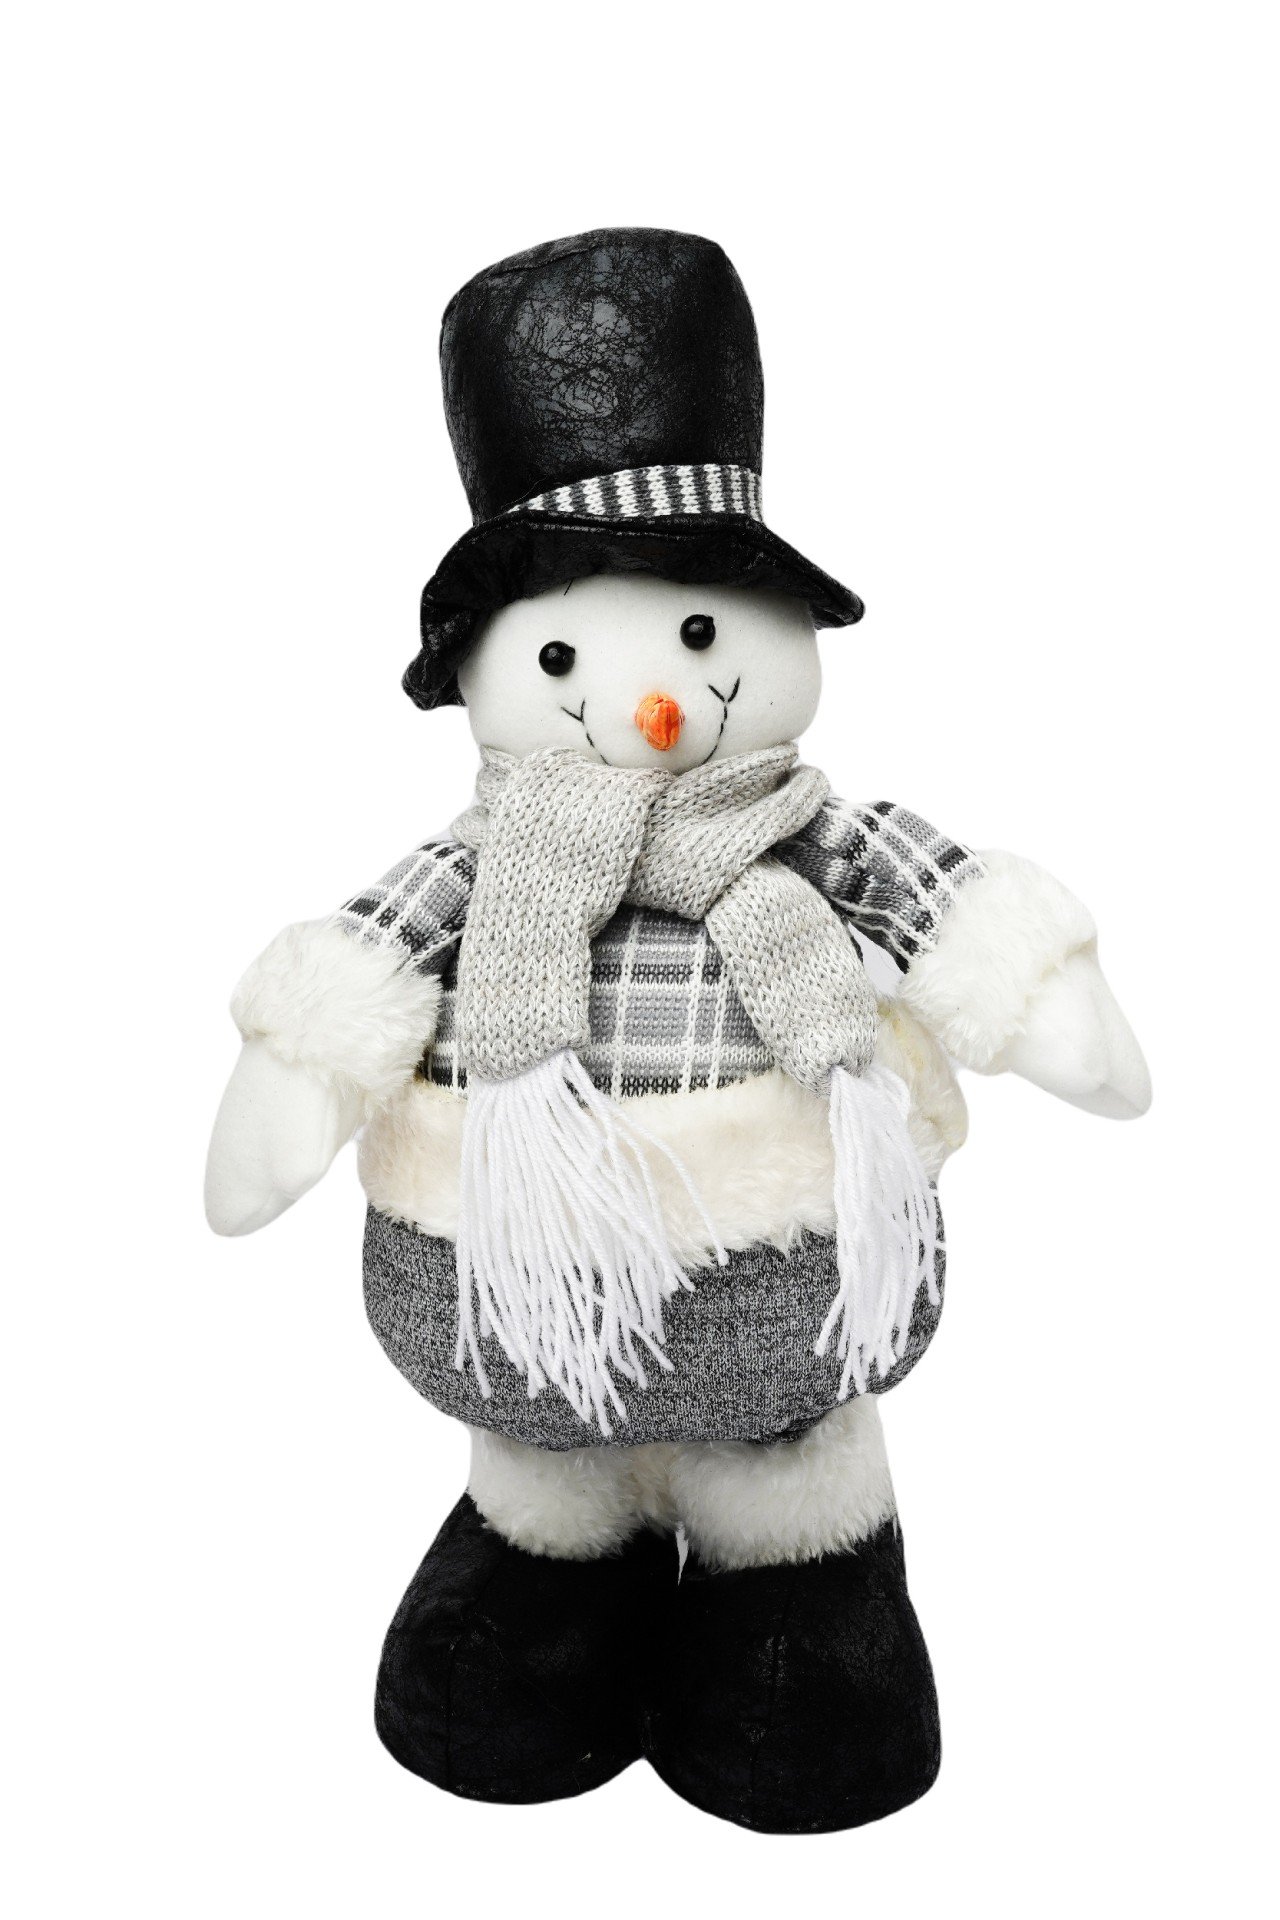 Новогоднее украшение Снеговик с шарфом 32 см